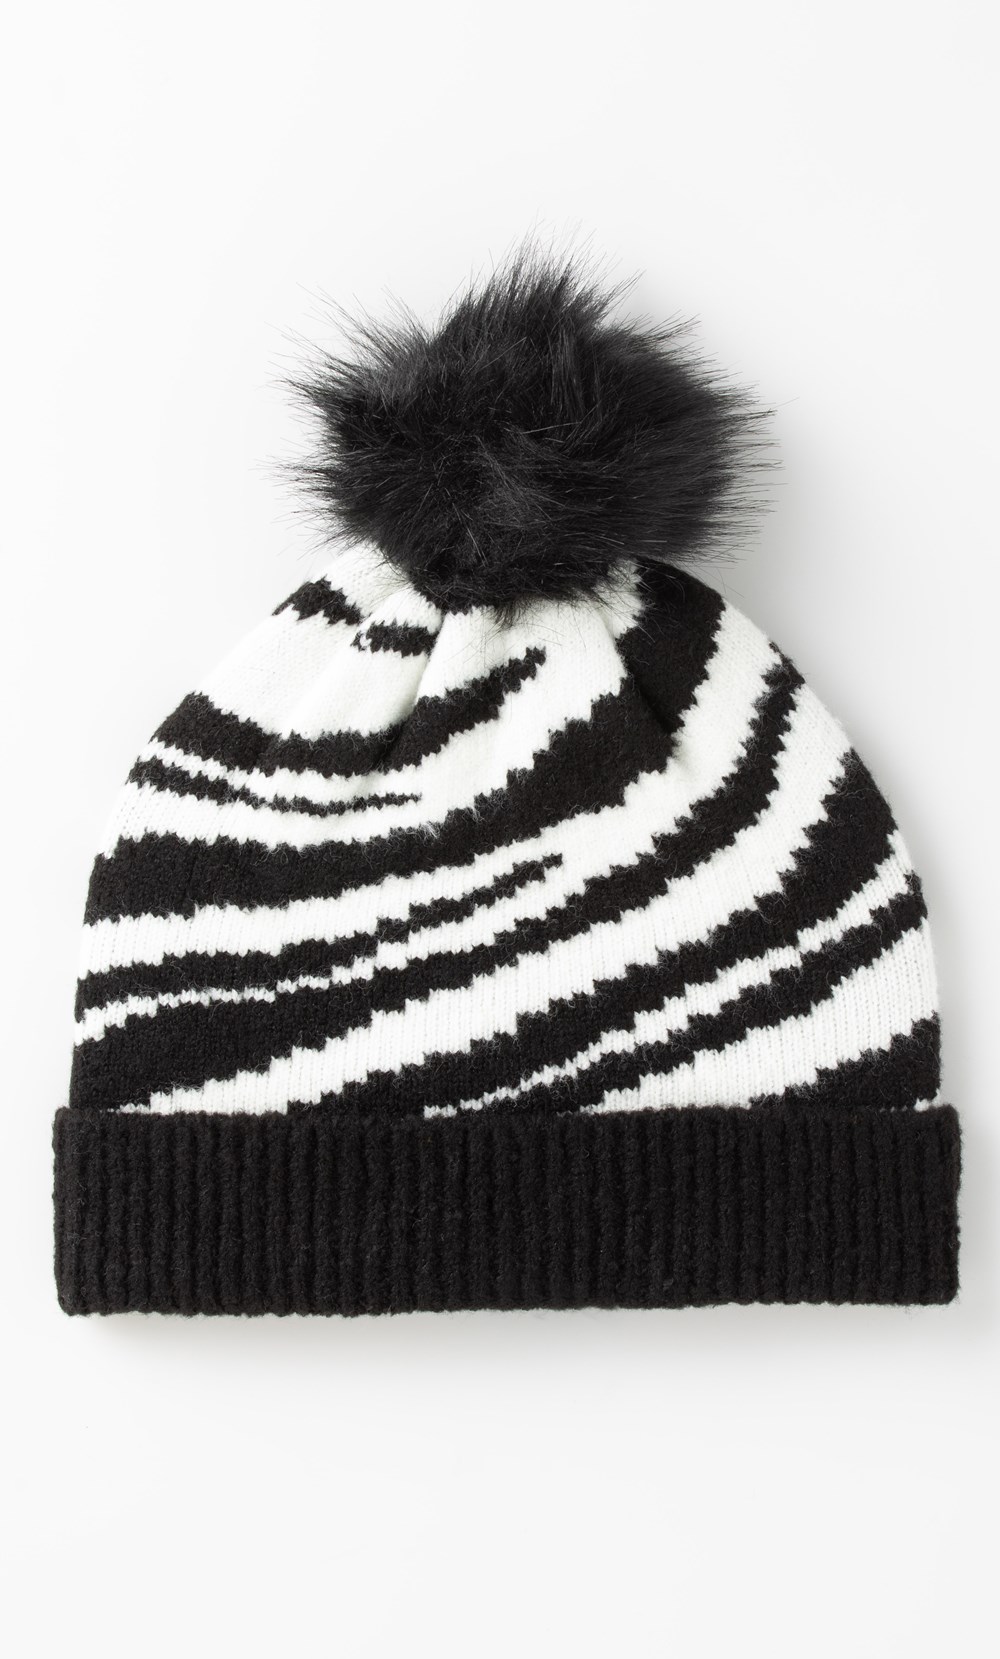 Brands - Klass Animal Knit Pom Pom Beanie Hat Black Women’s